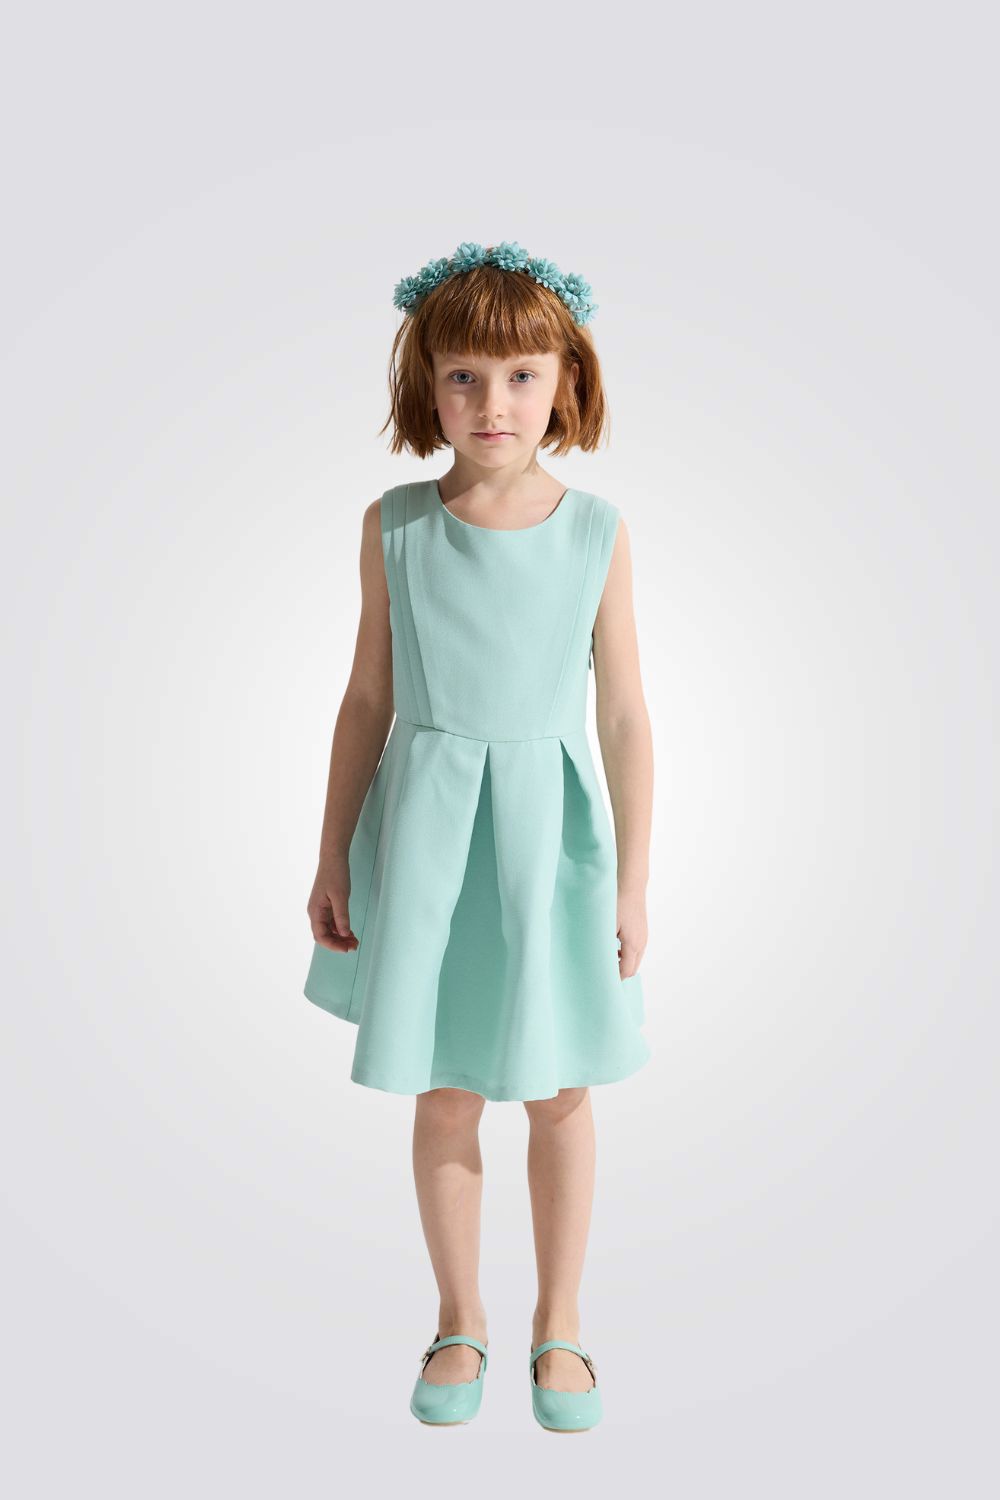 שמלה לילדות בצבע ירוק